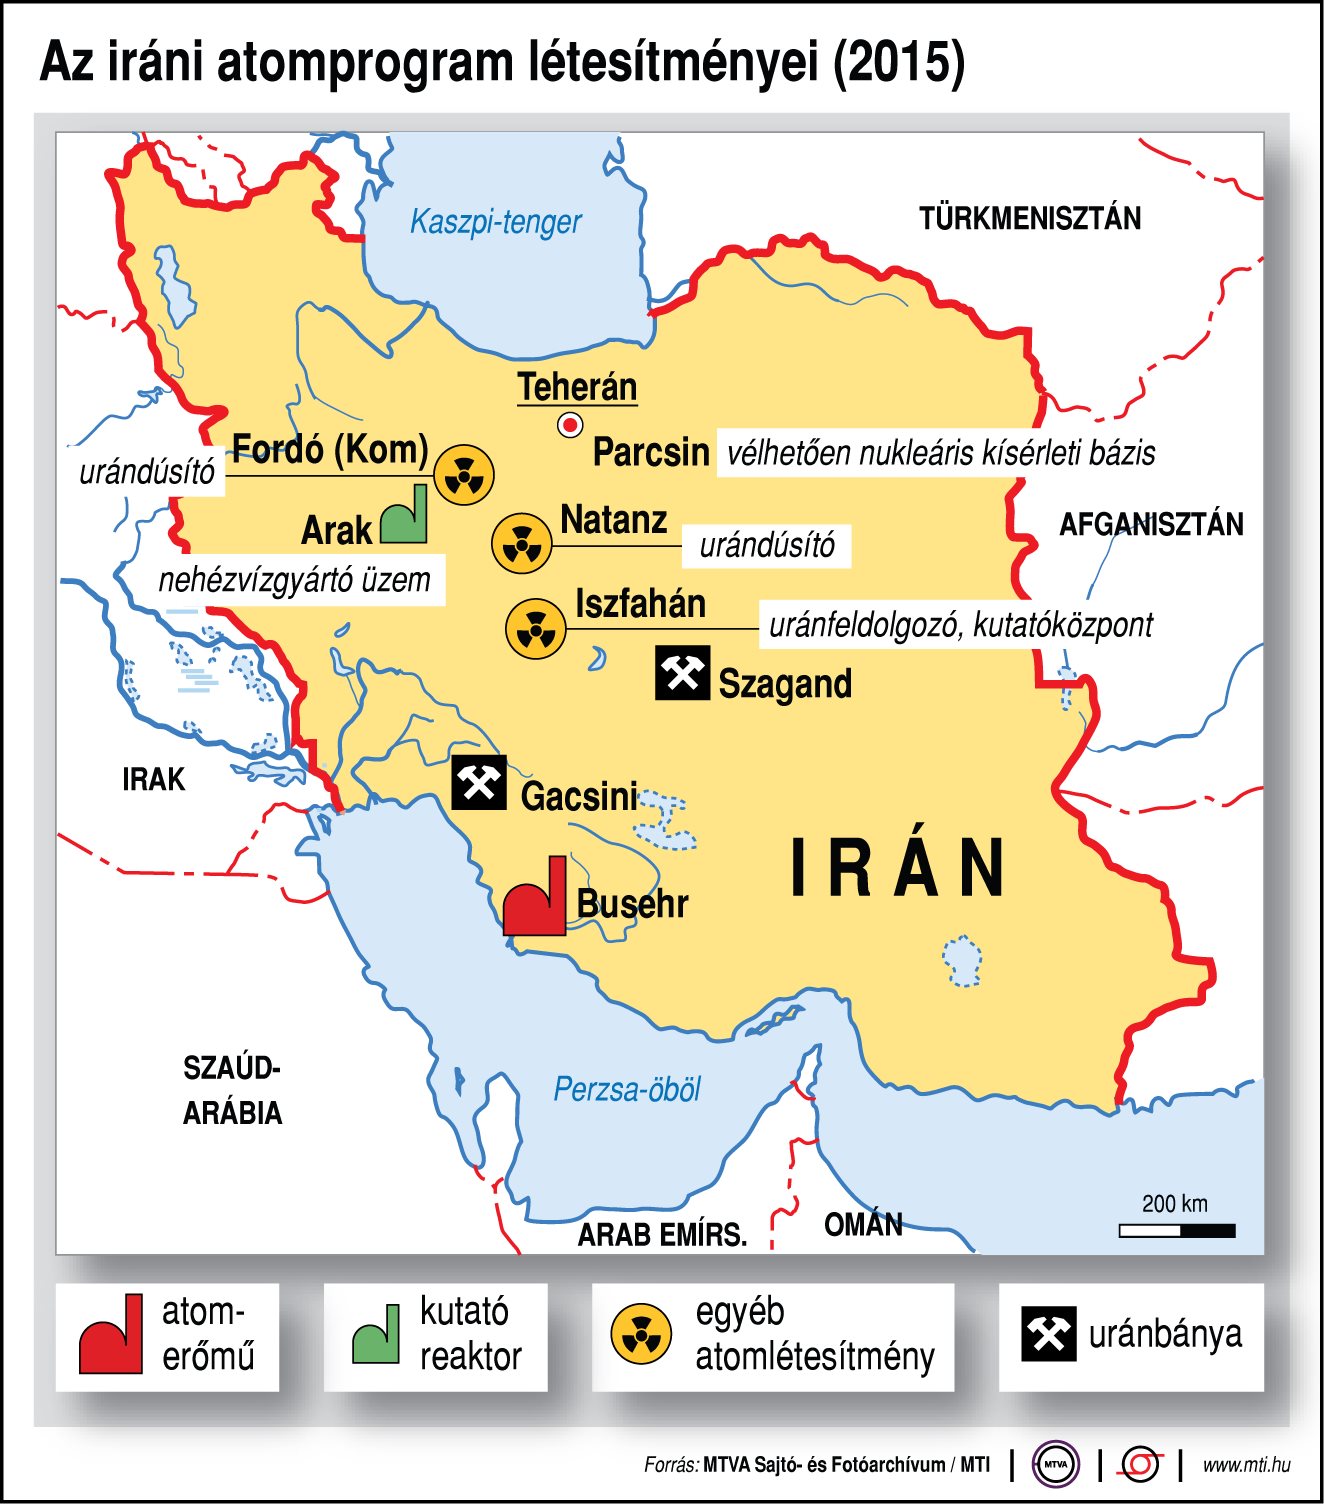 Az iráni atomprogram létesítményei (2015)